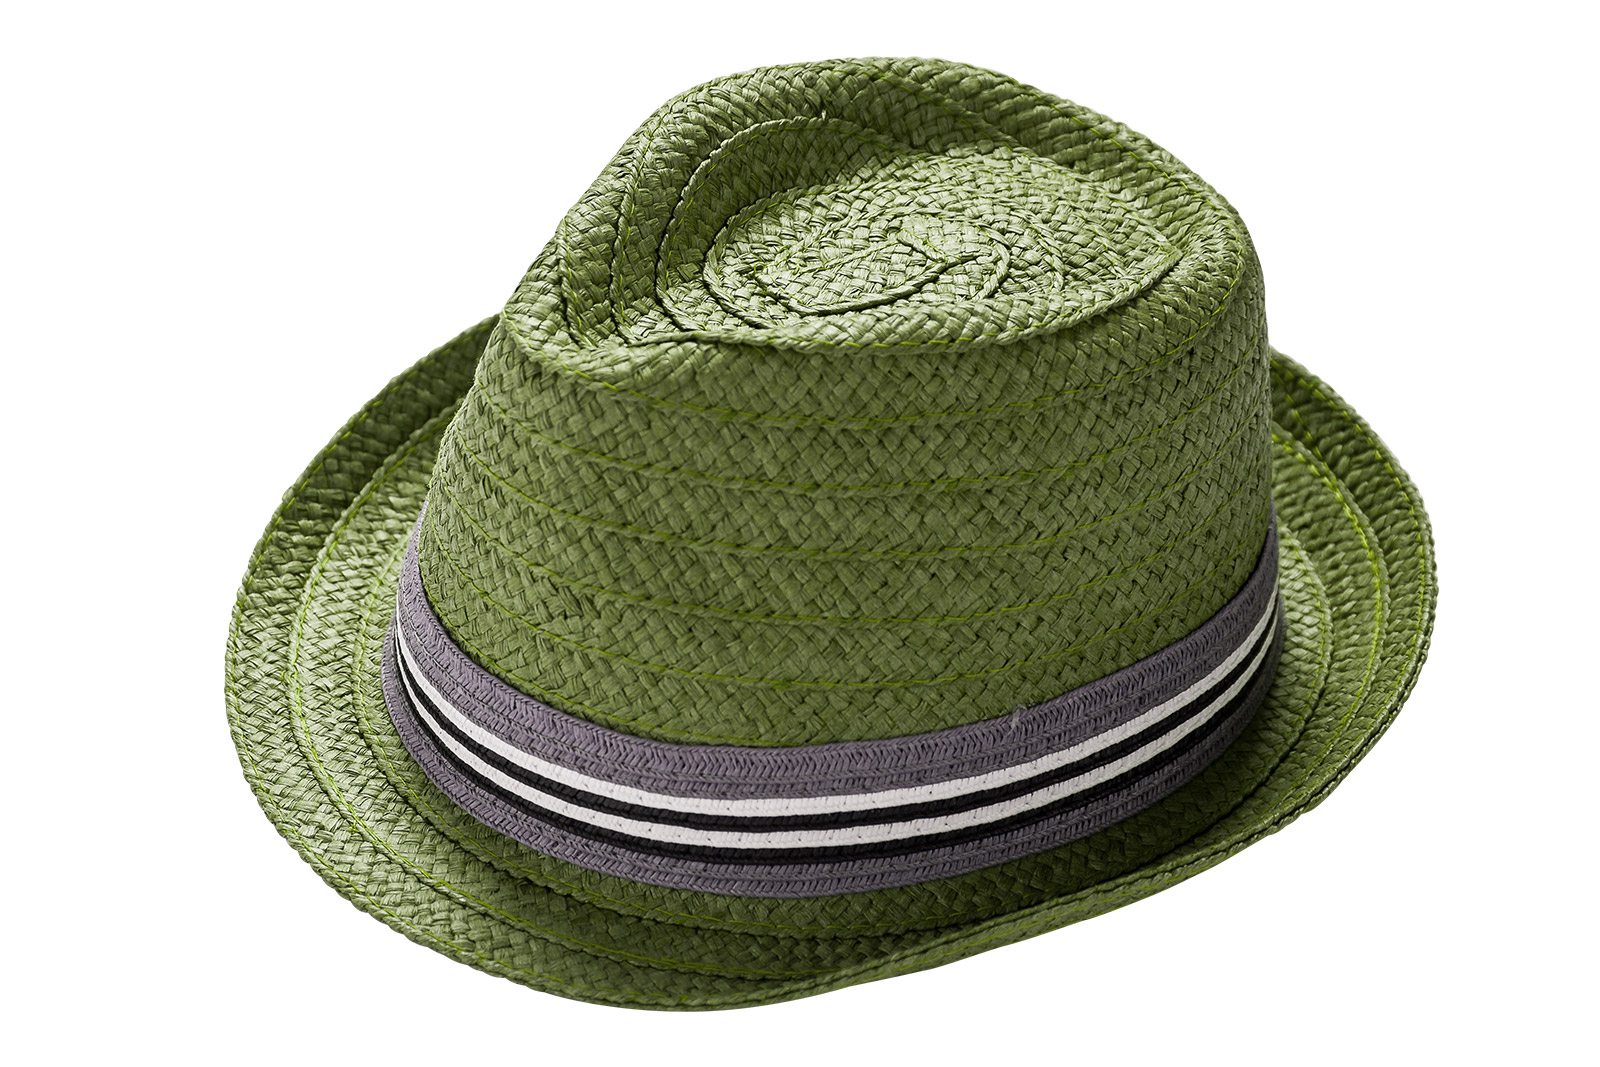 Geflochtener Hut (Legeware), hochauflösend fotografiert und zusätzlich freigestellt